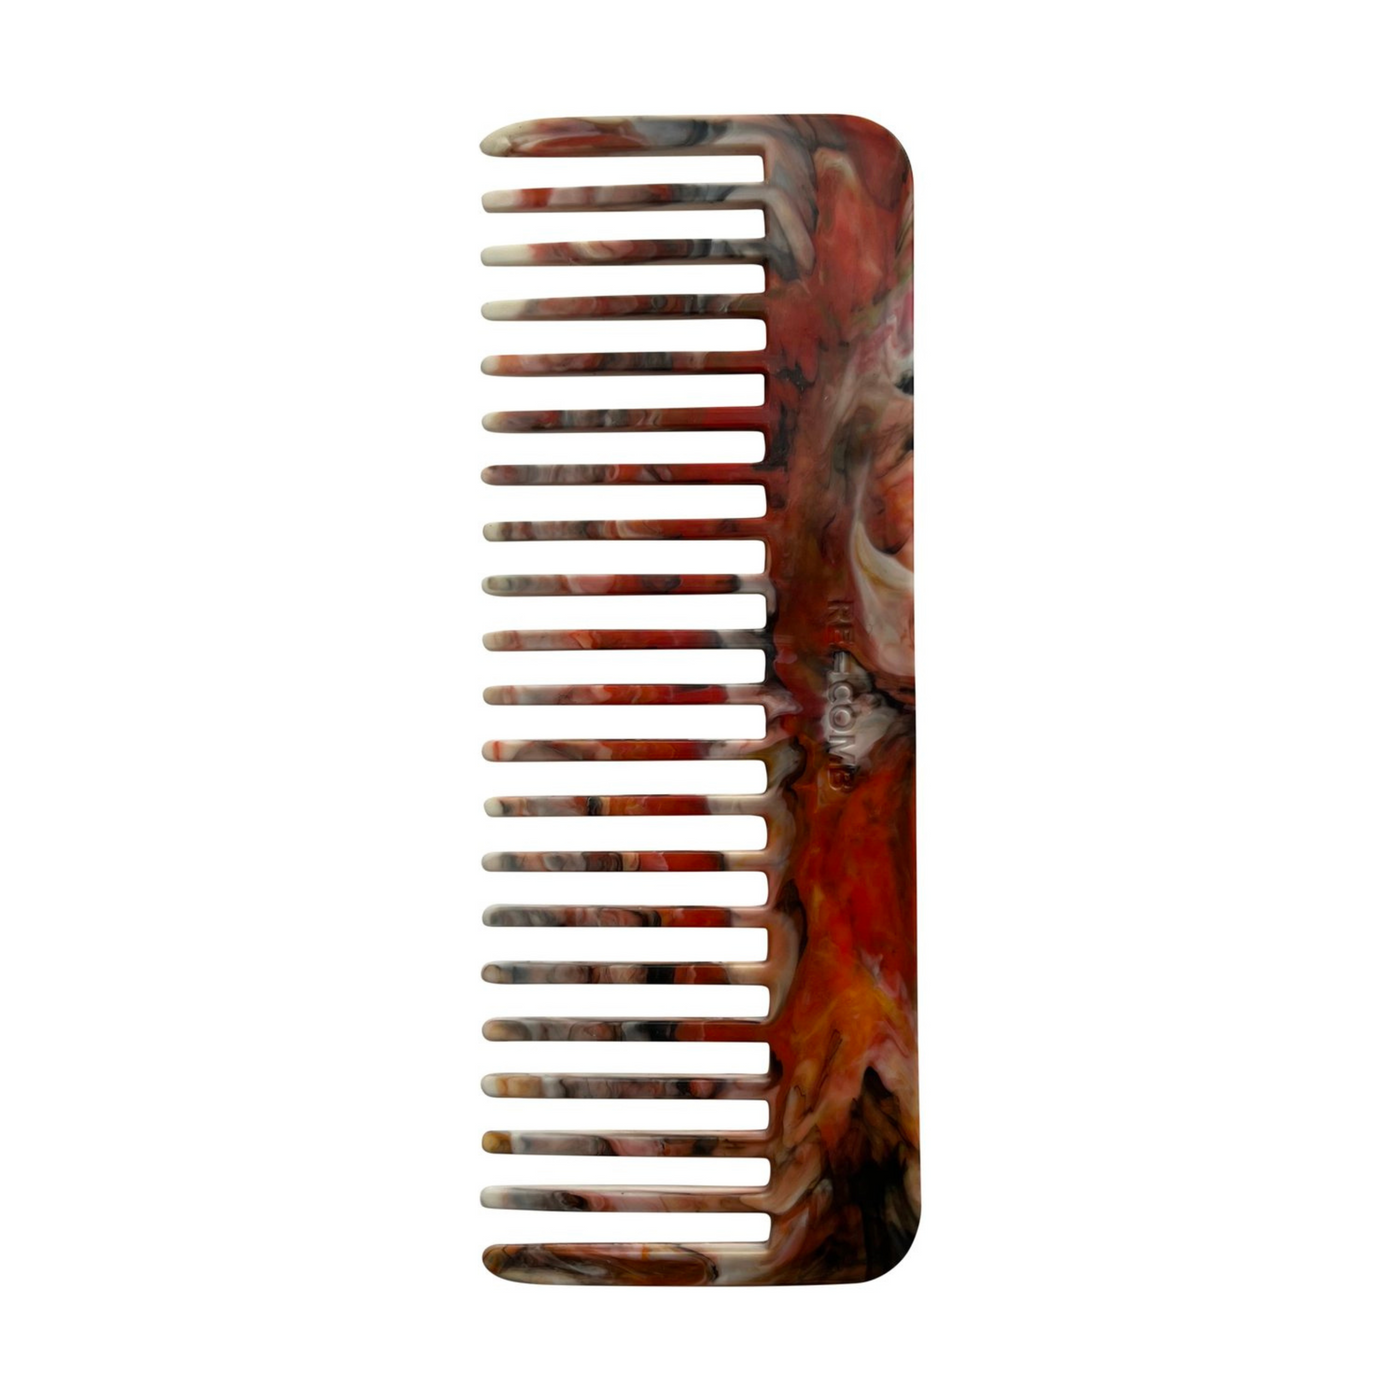 Re=Comb Comb